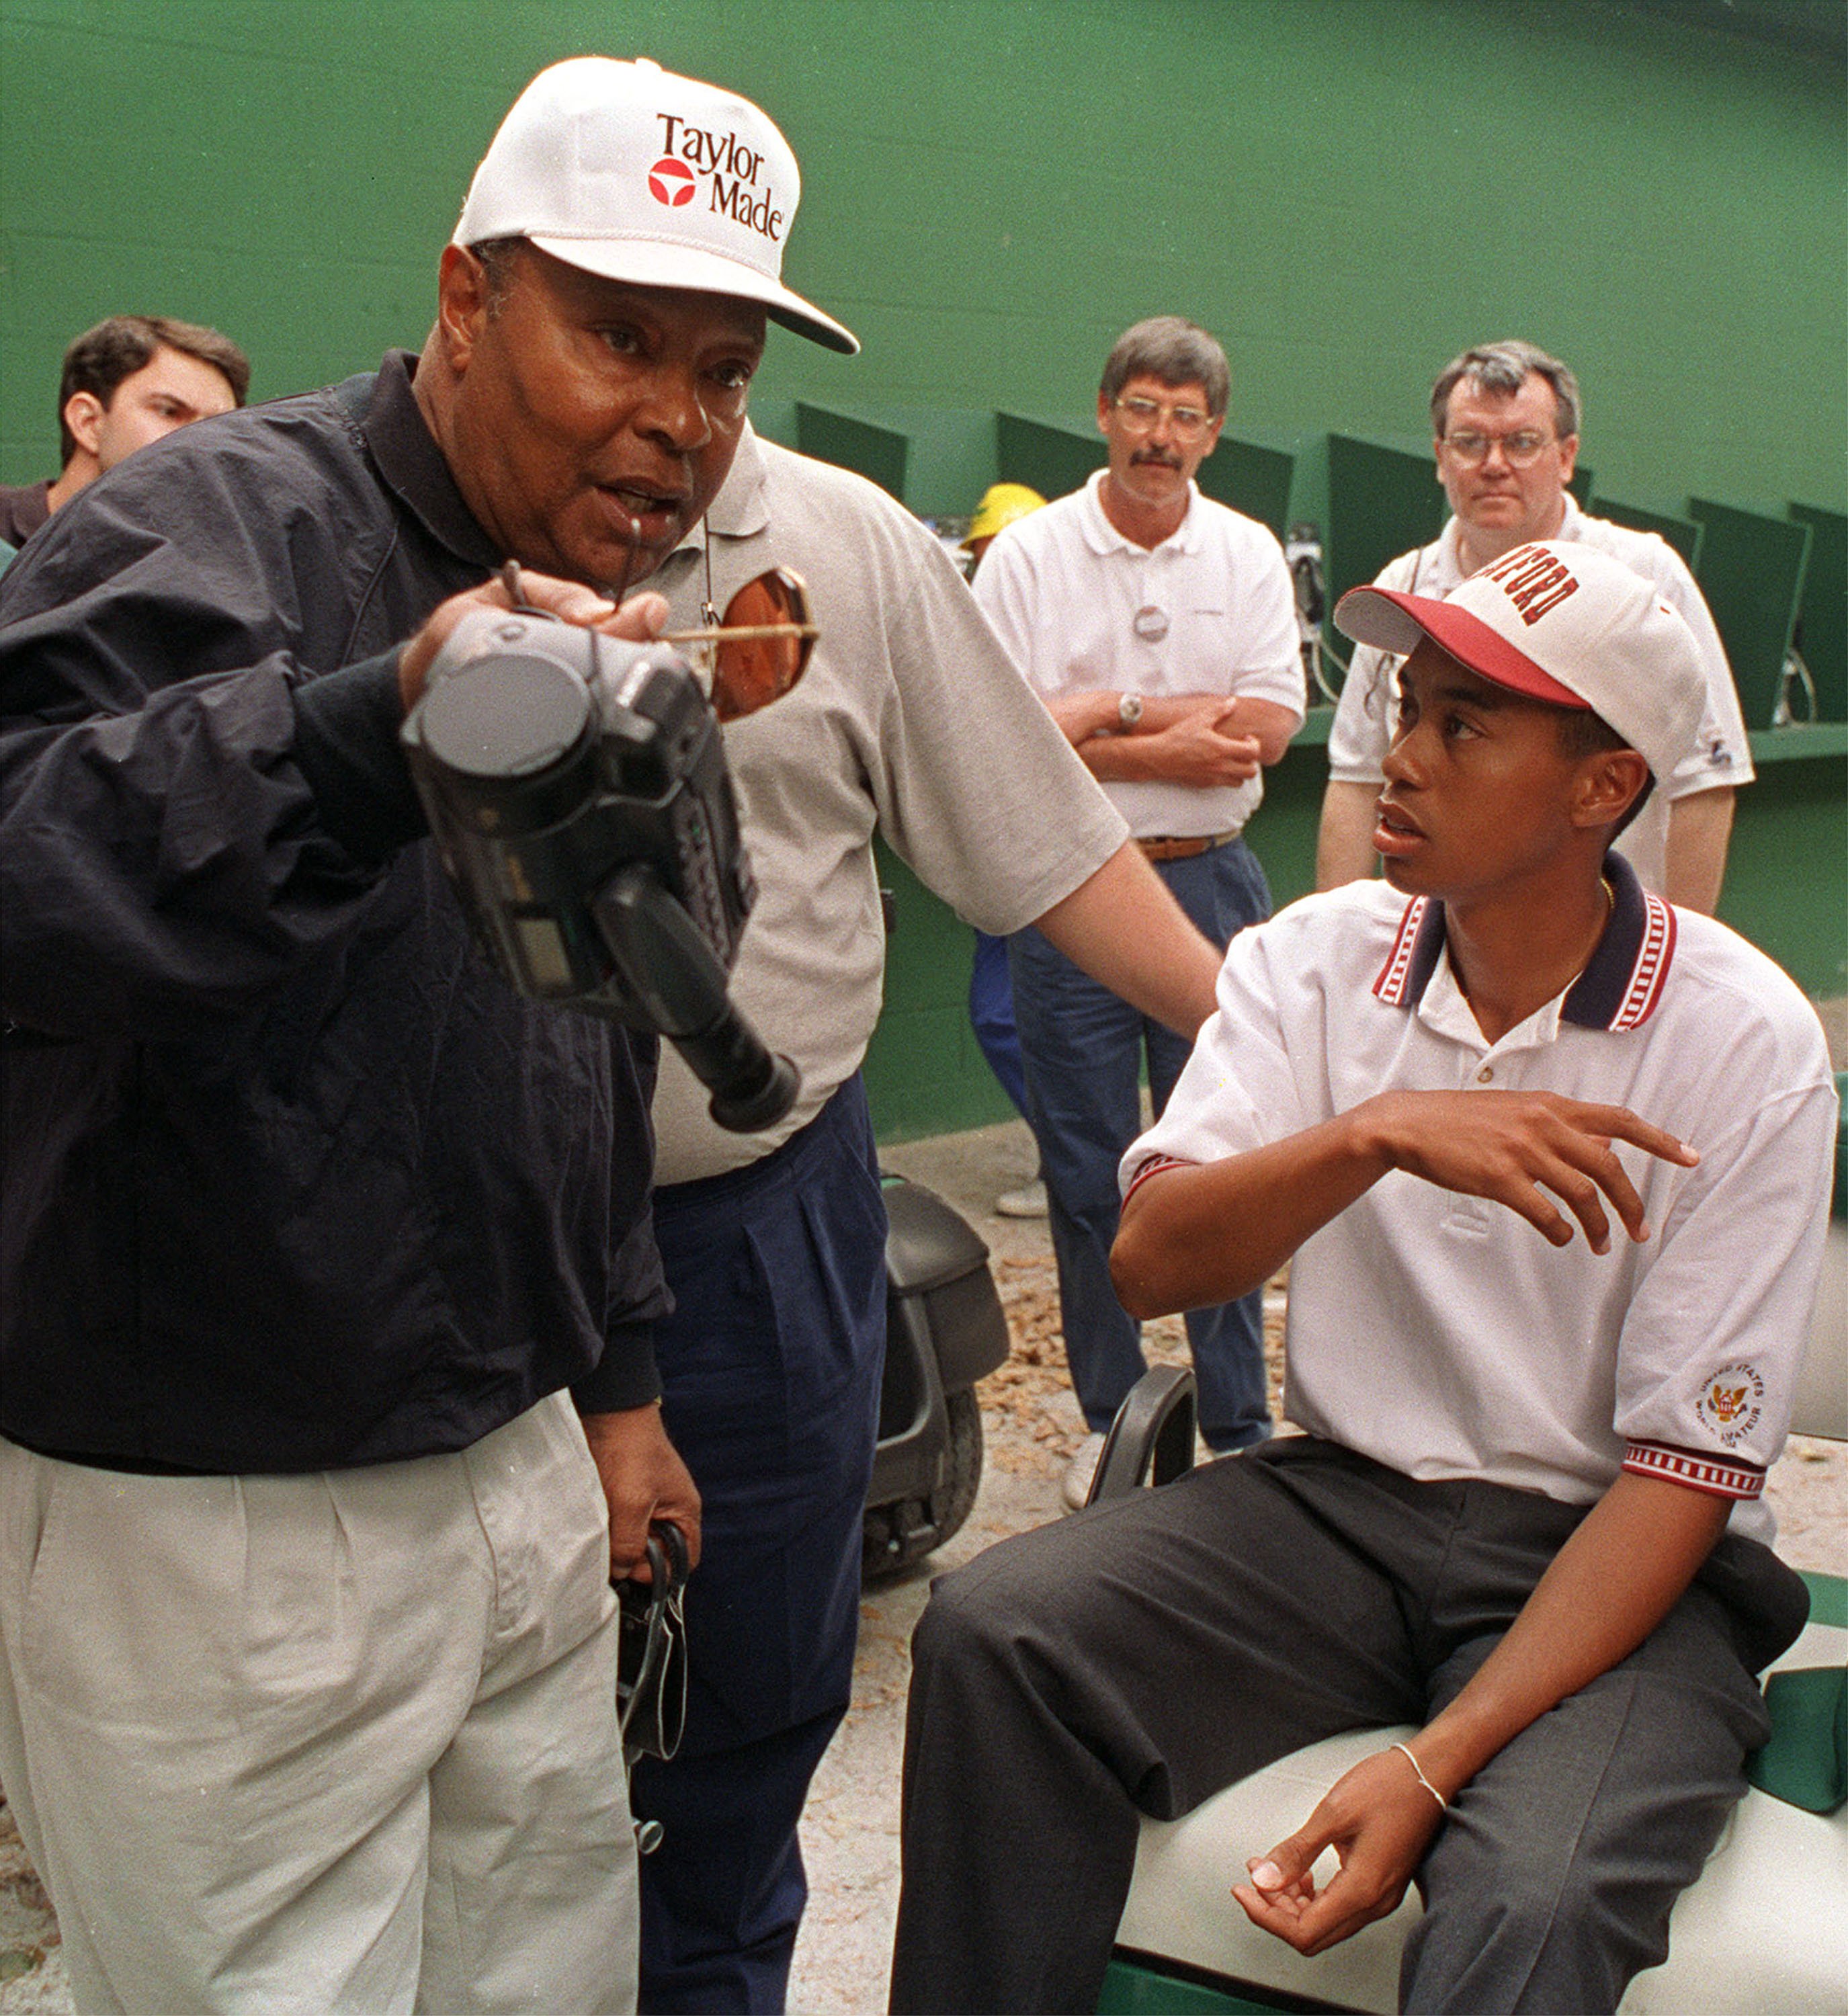 Tiger Woods, reklamfilm, Nike, Reklam, Familj, Golf, Elin Nordegren, Otrohet